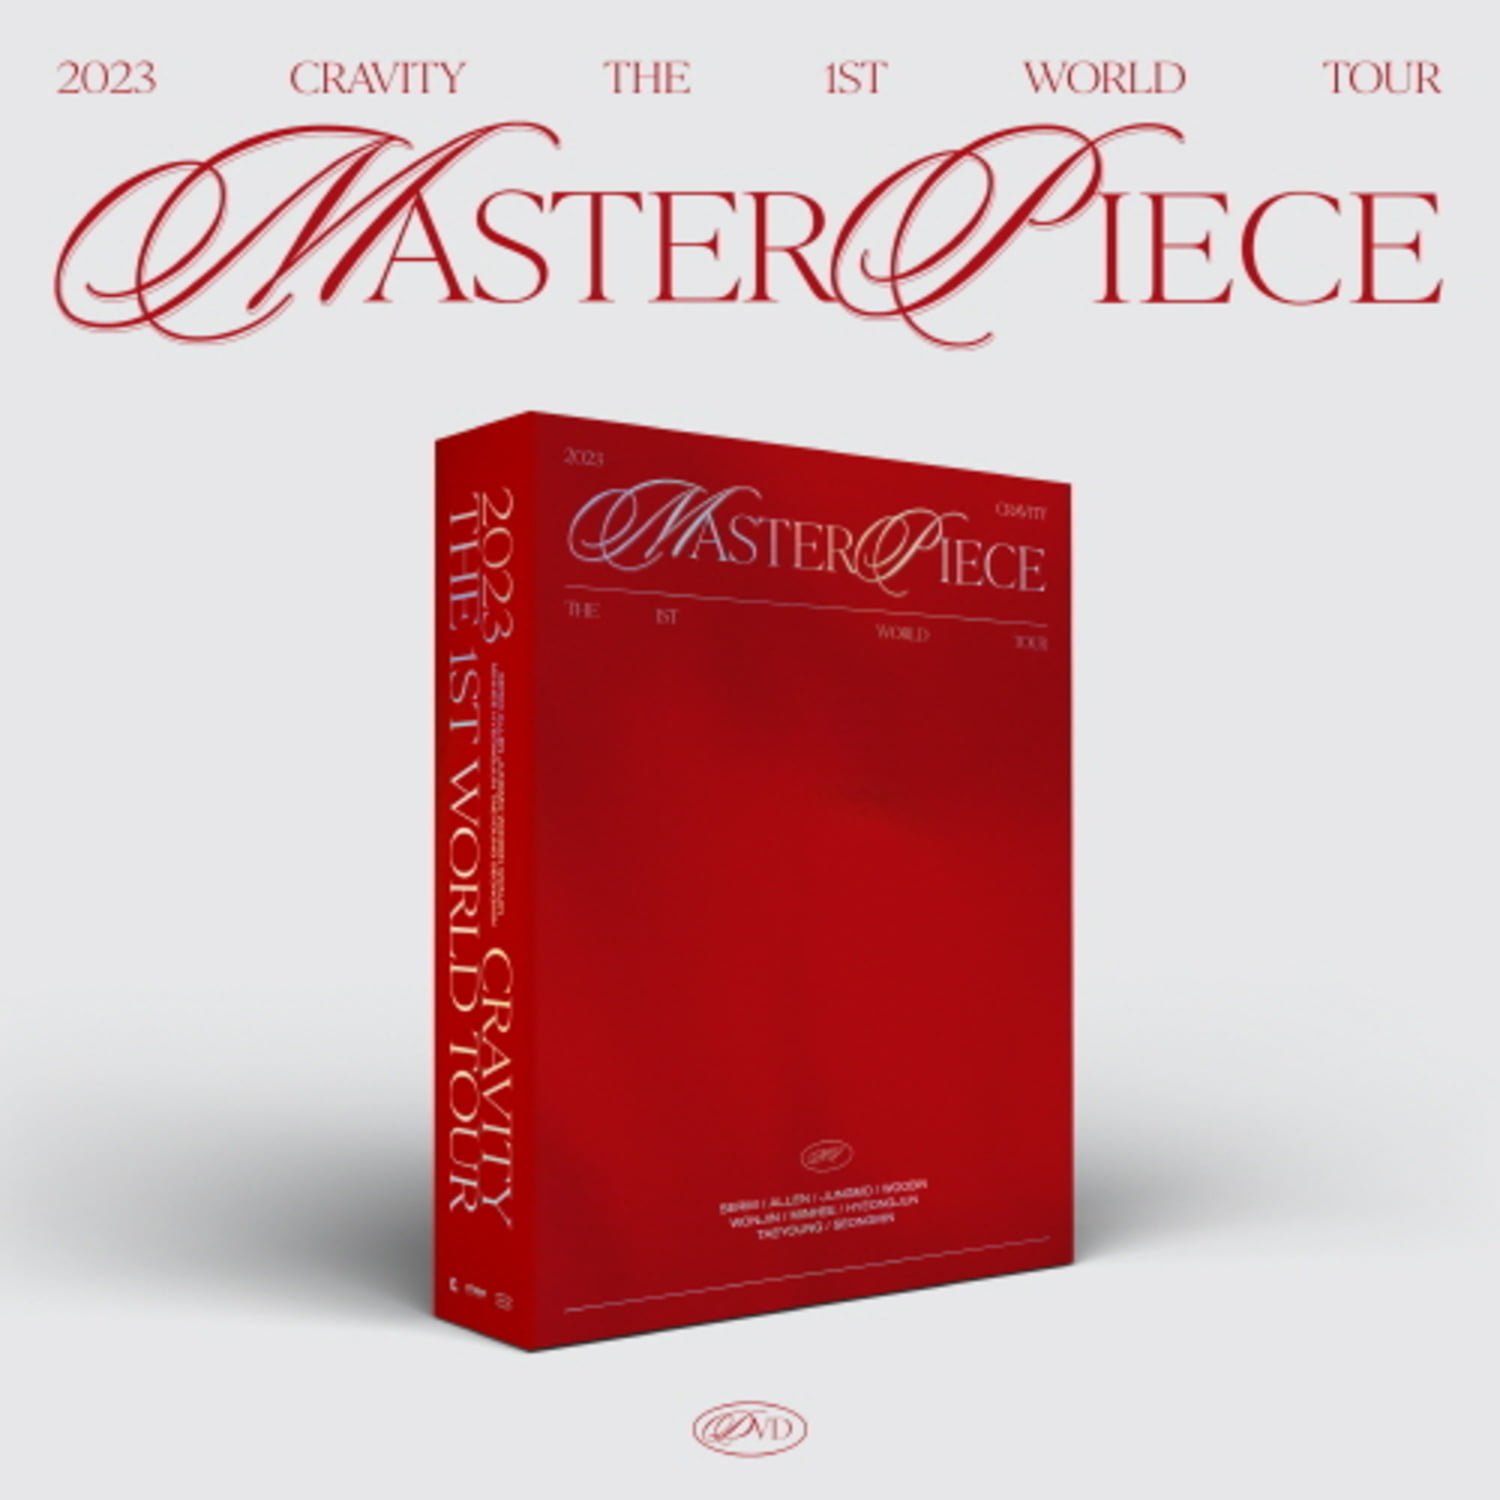 크래비티 (CRAVITY) - 2023 CRAVITY THE 1ST WORLD TOUR ‘MASTERPIECE’ DVD